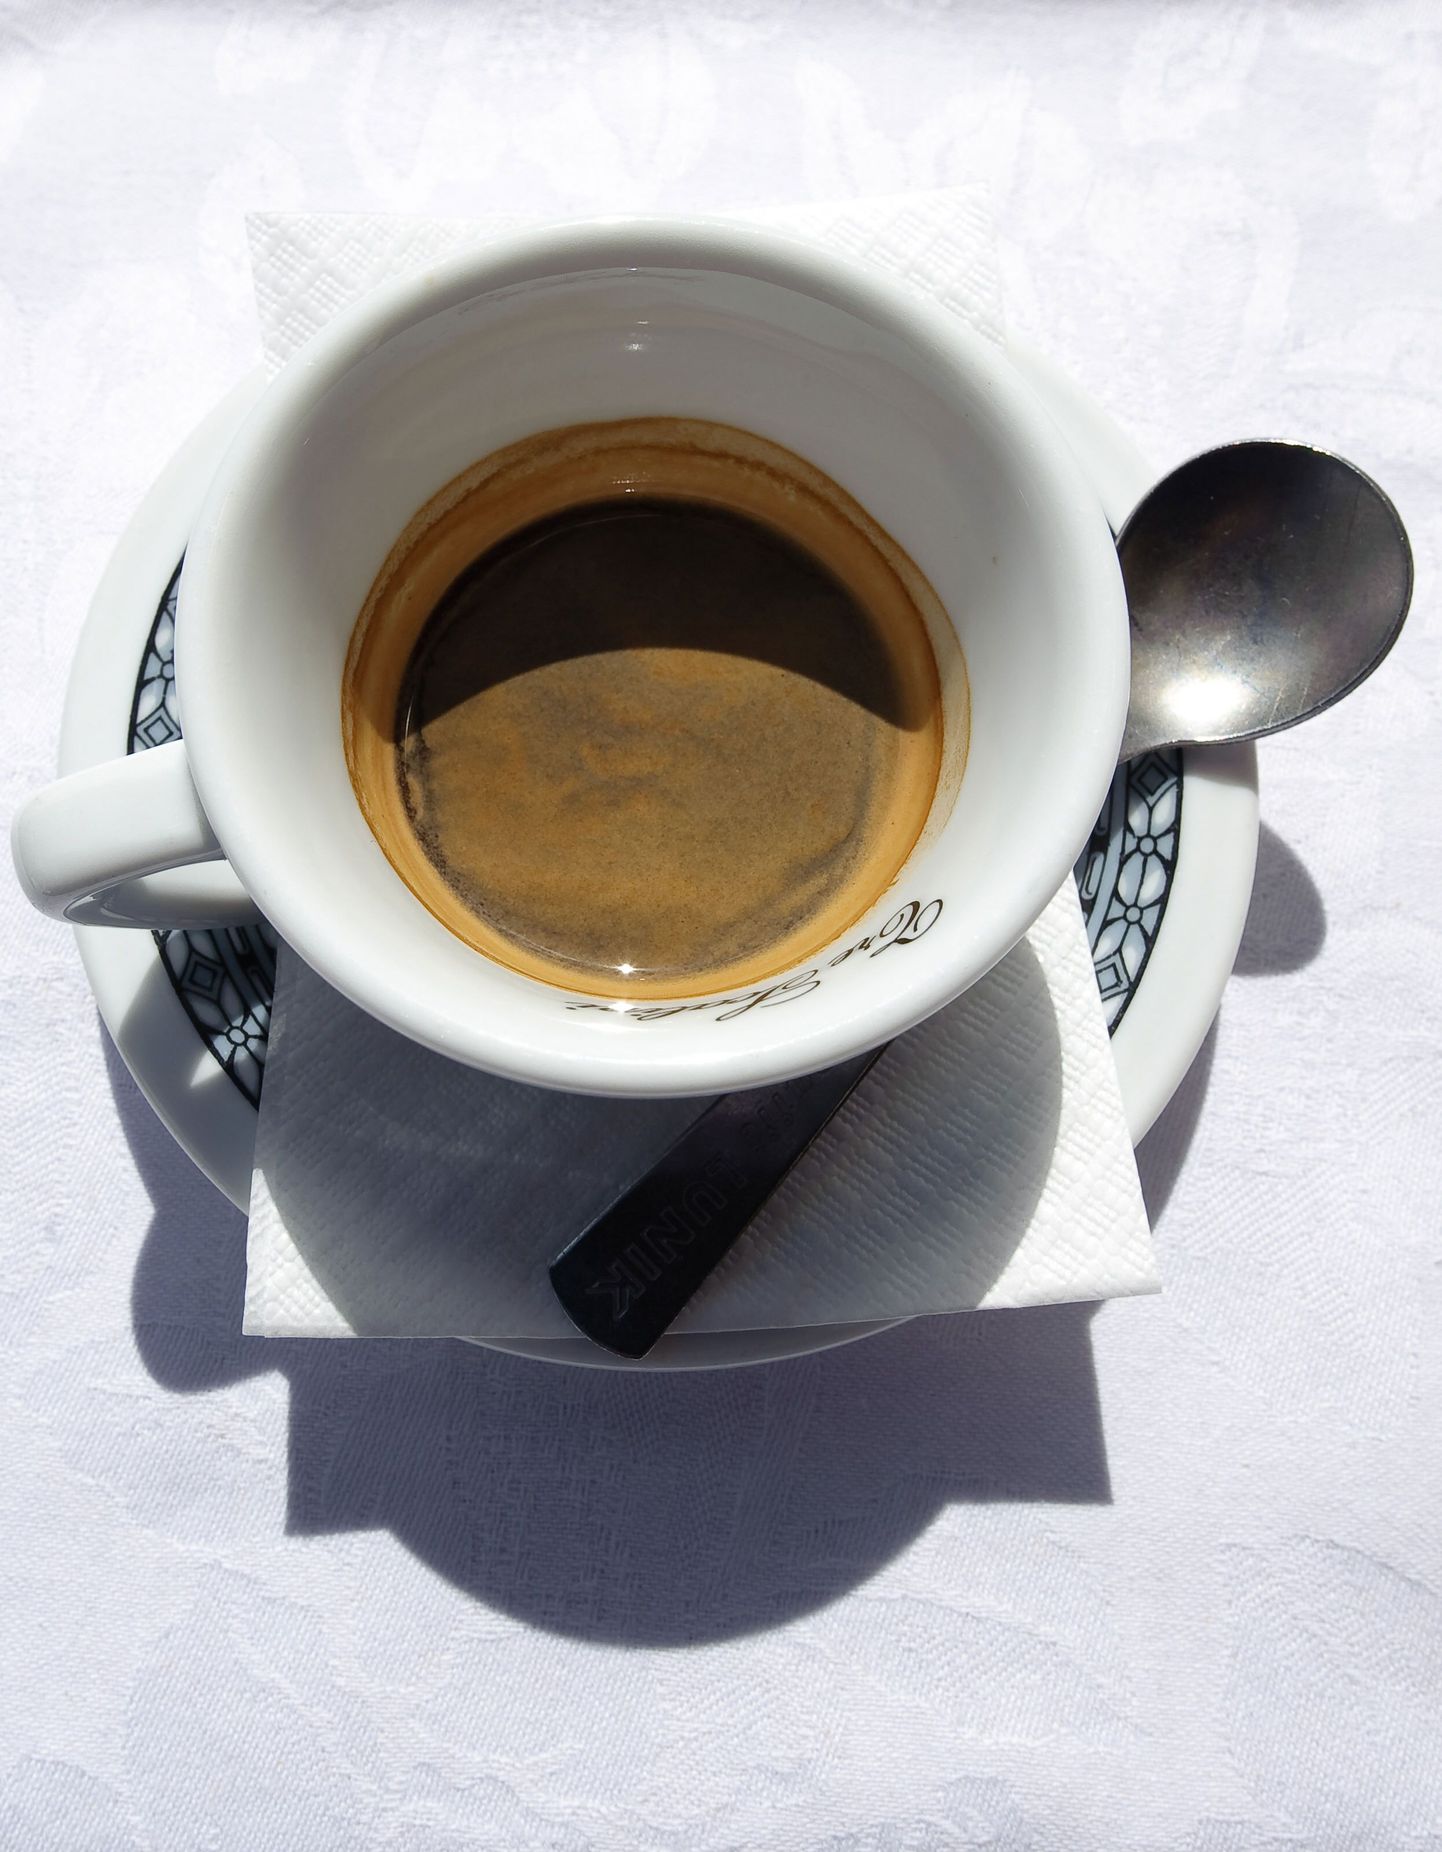 USA kuulus kohviguru kaotas kohvimasina alla jäädes elu